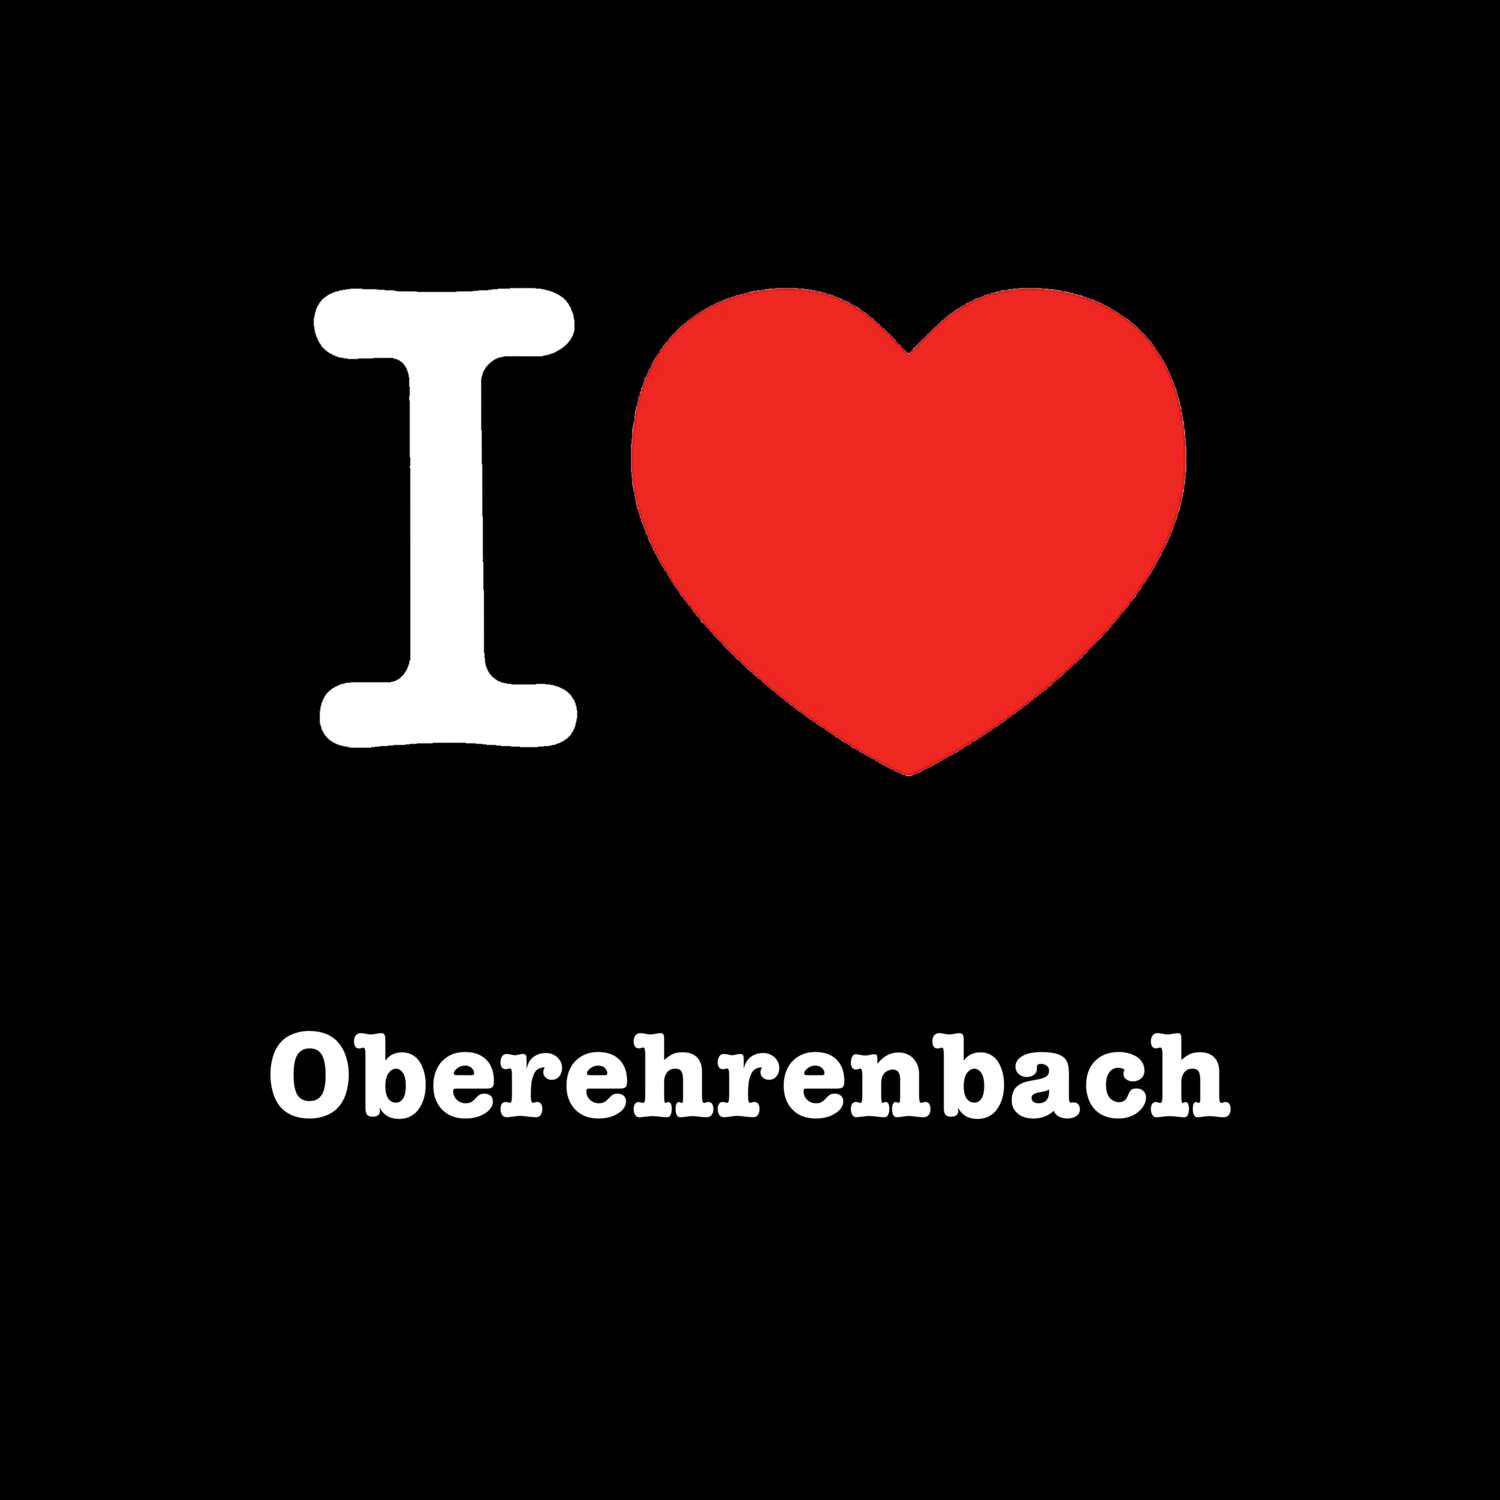 Oberehrenbach T-Shirt »I love«